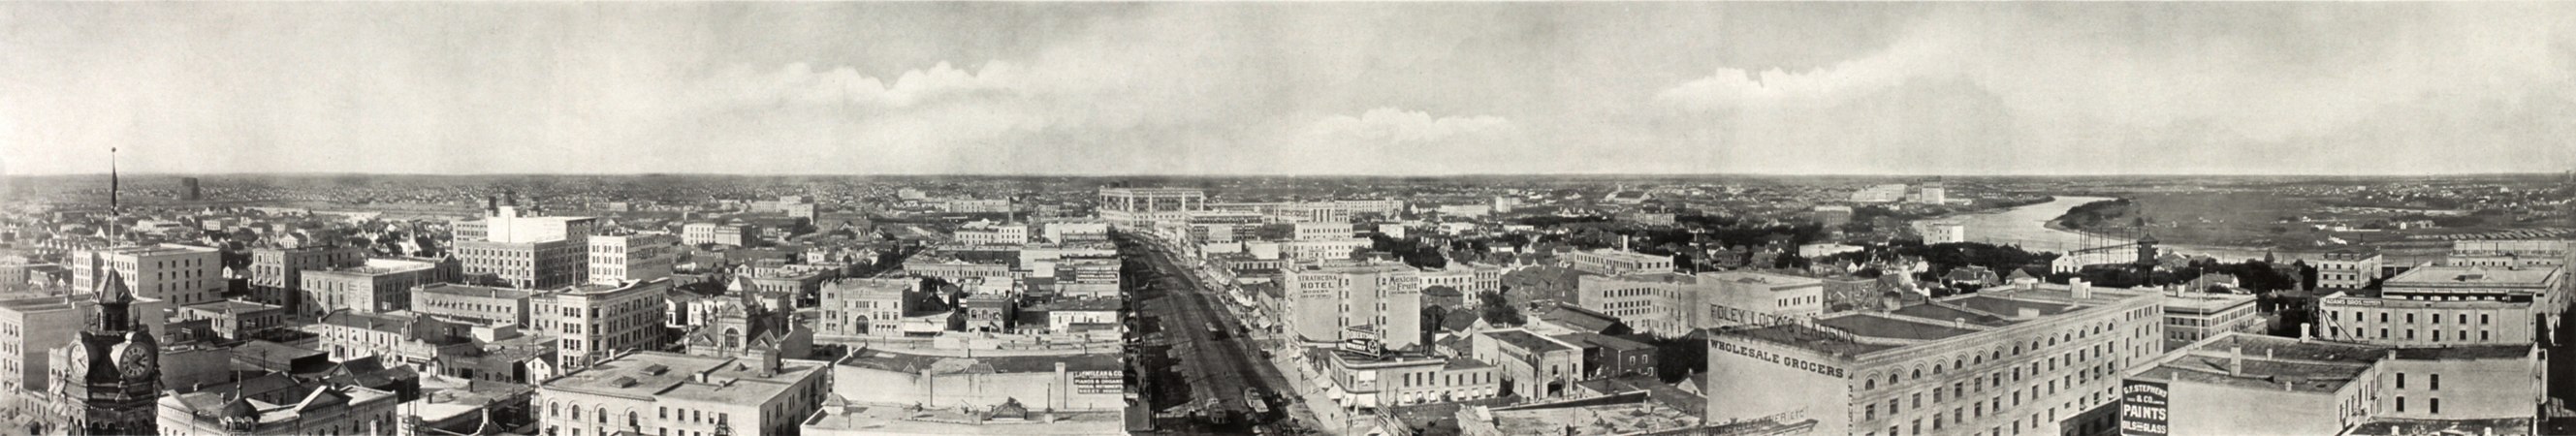 Winnipeg panorama, from 1907.